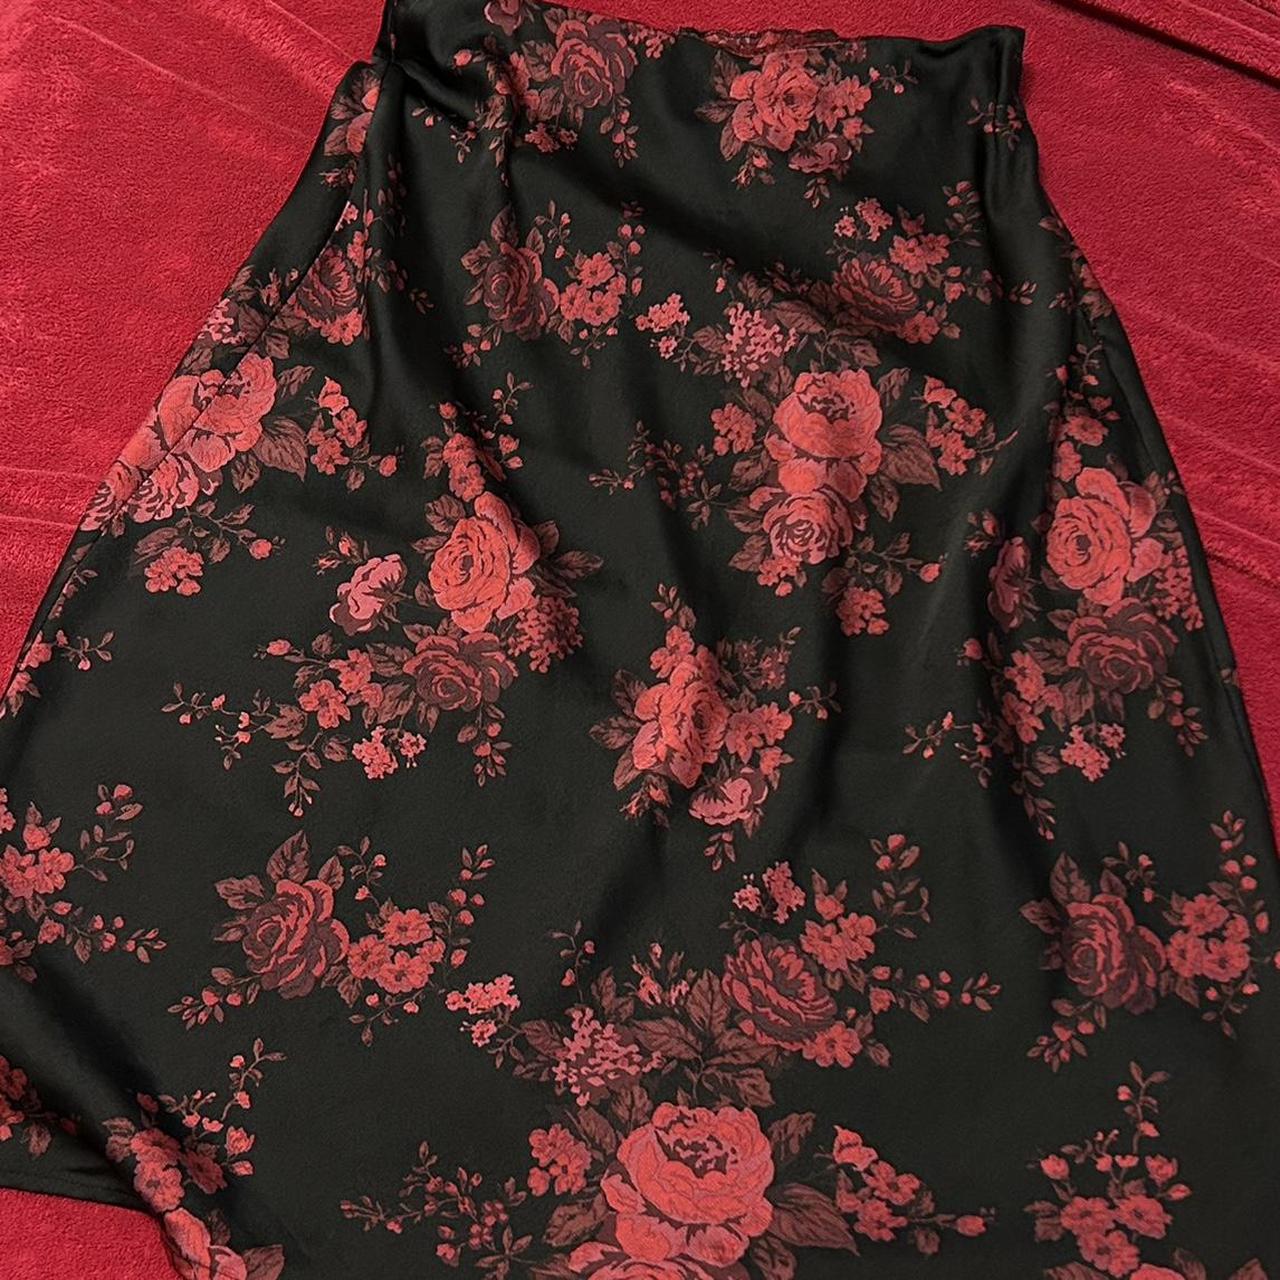 🖤 Midi-Maxi Floral Skirt 🖤 Size 1X (fits L-XL),... - Depop